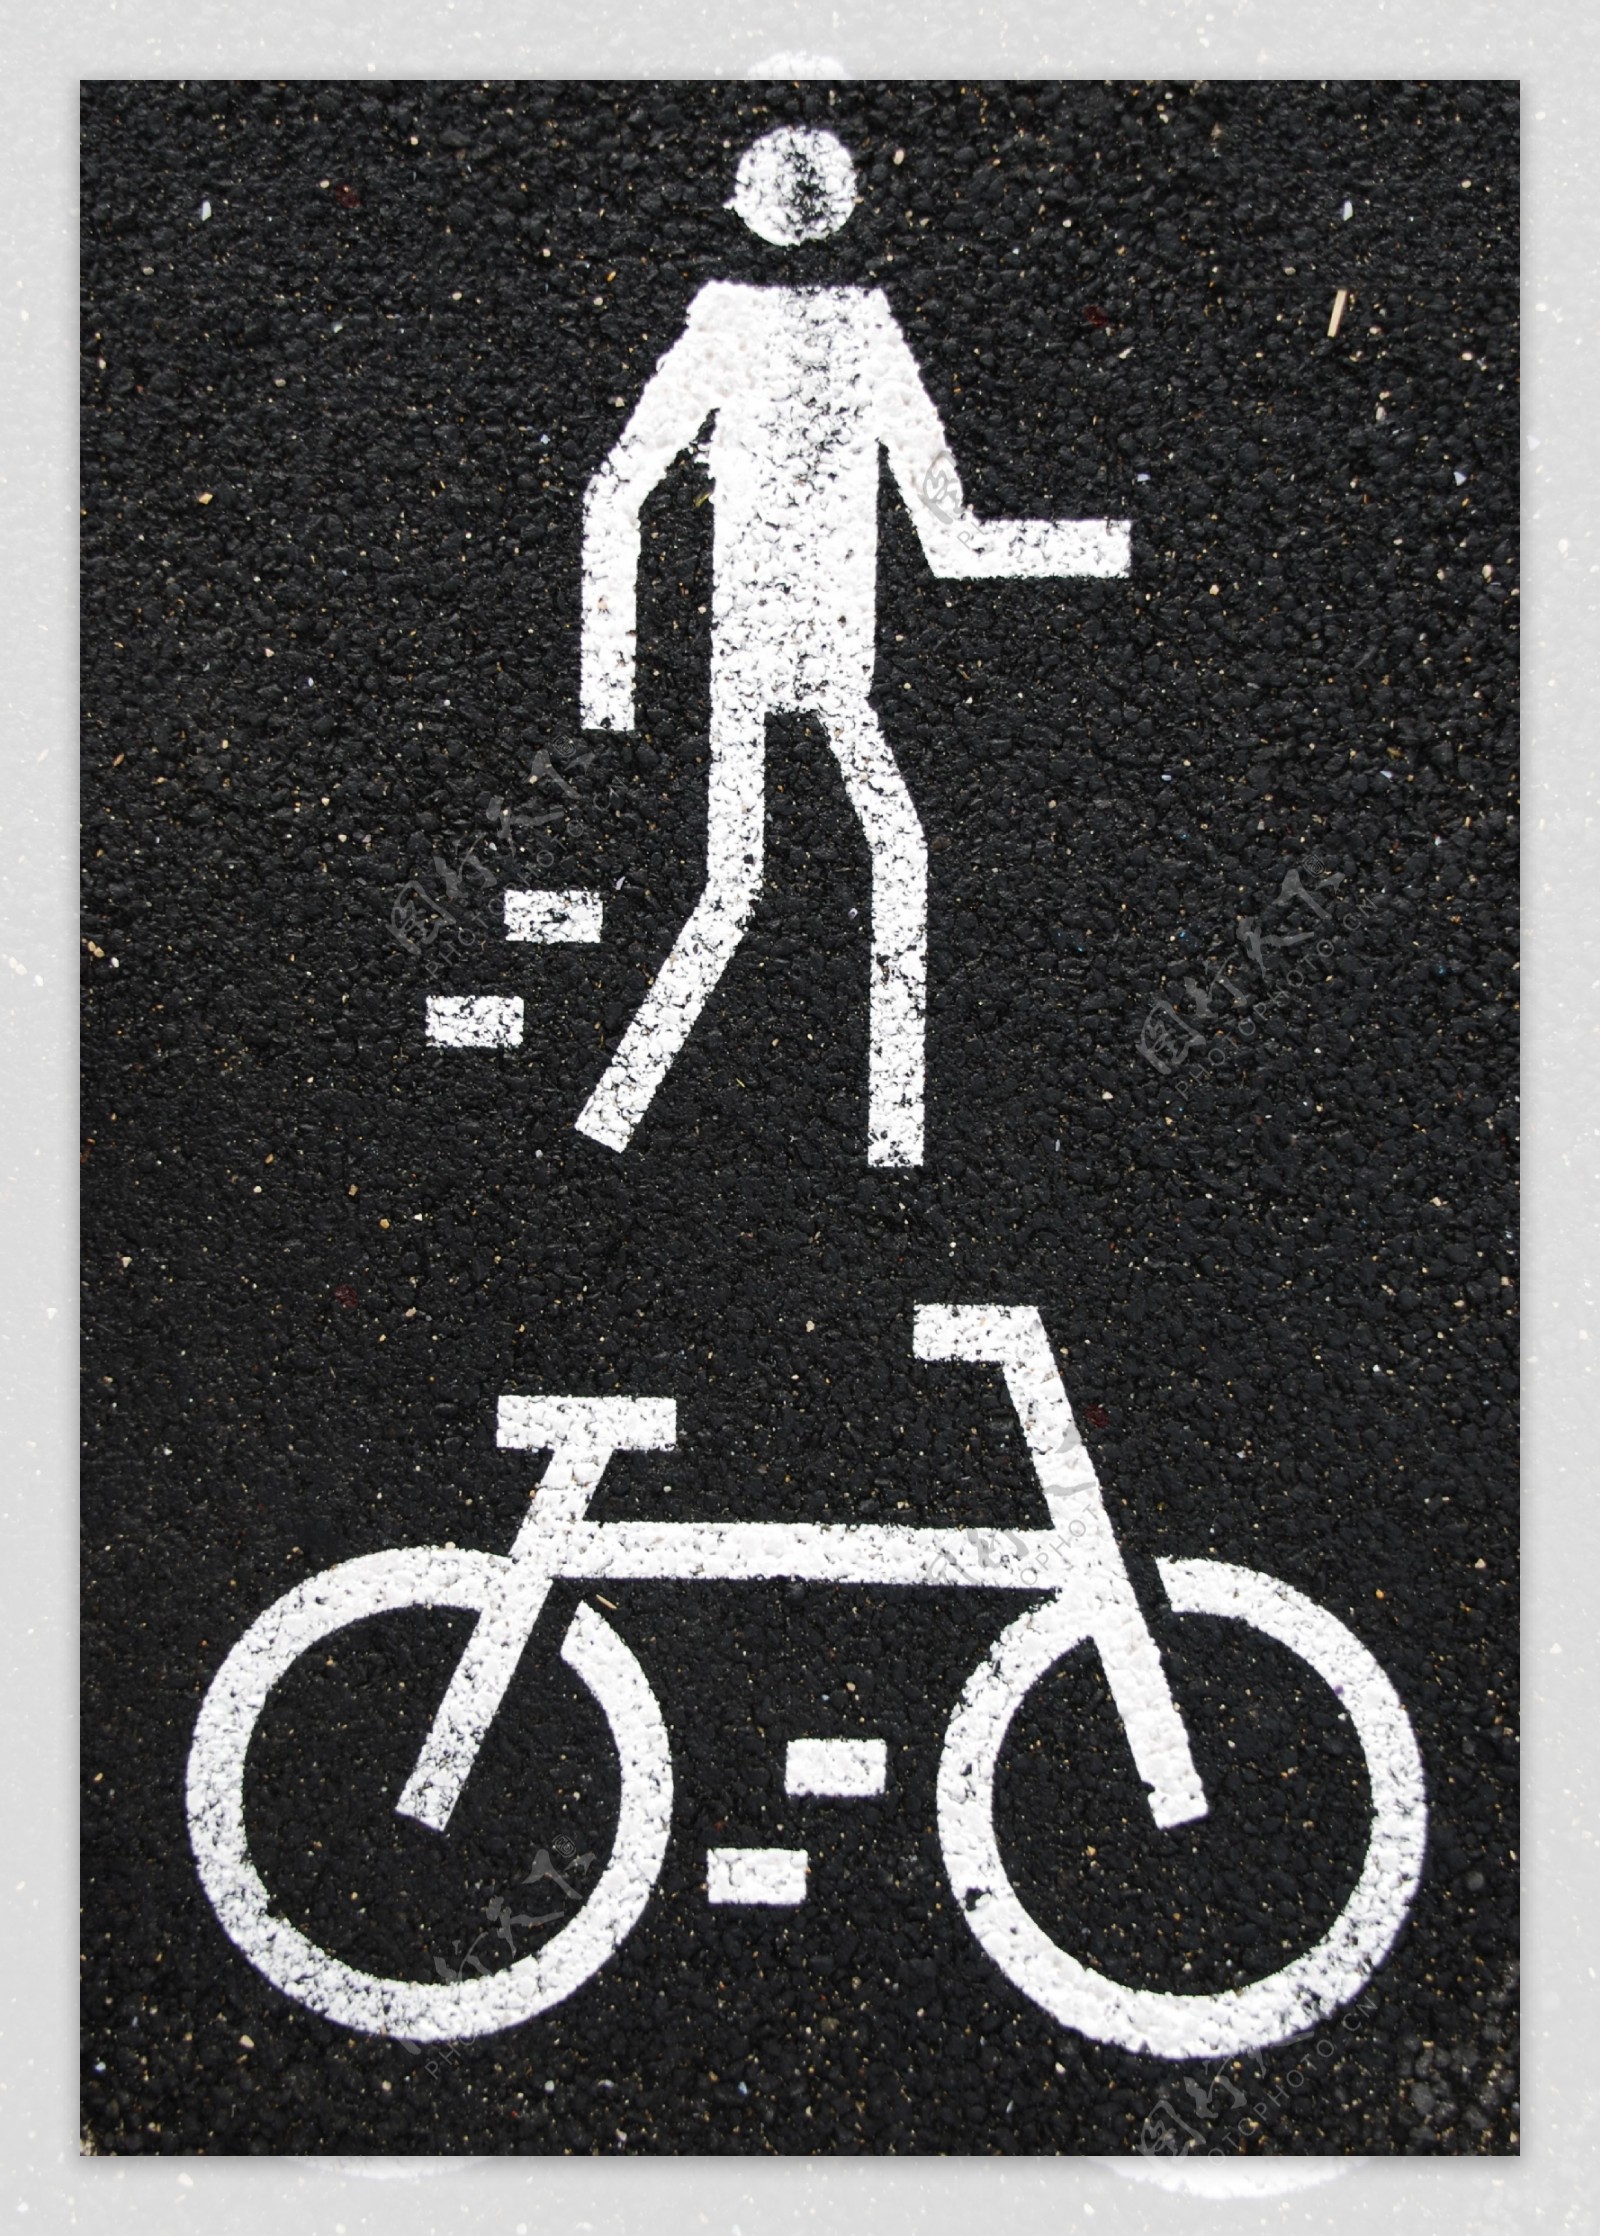 行人和自行车的迹象